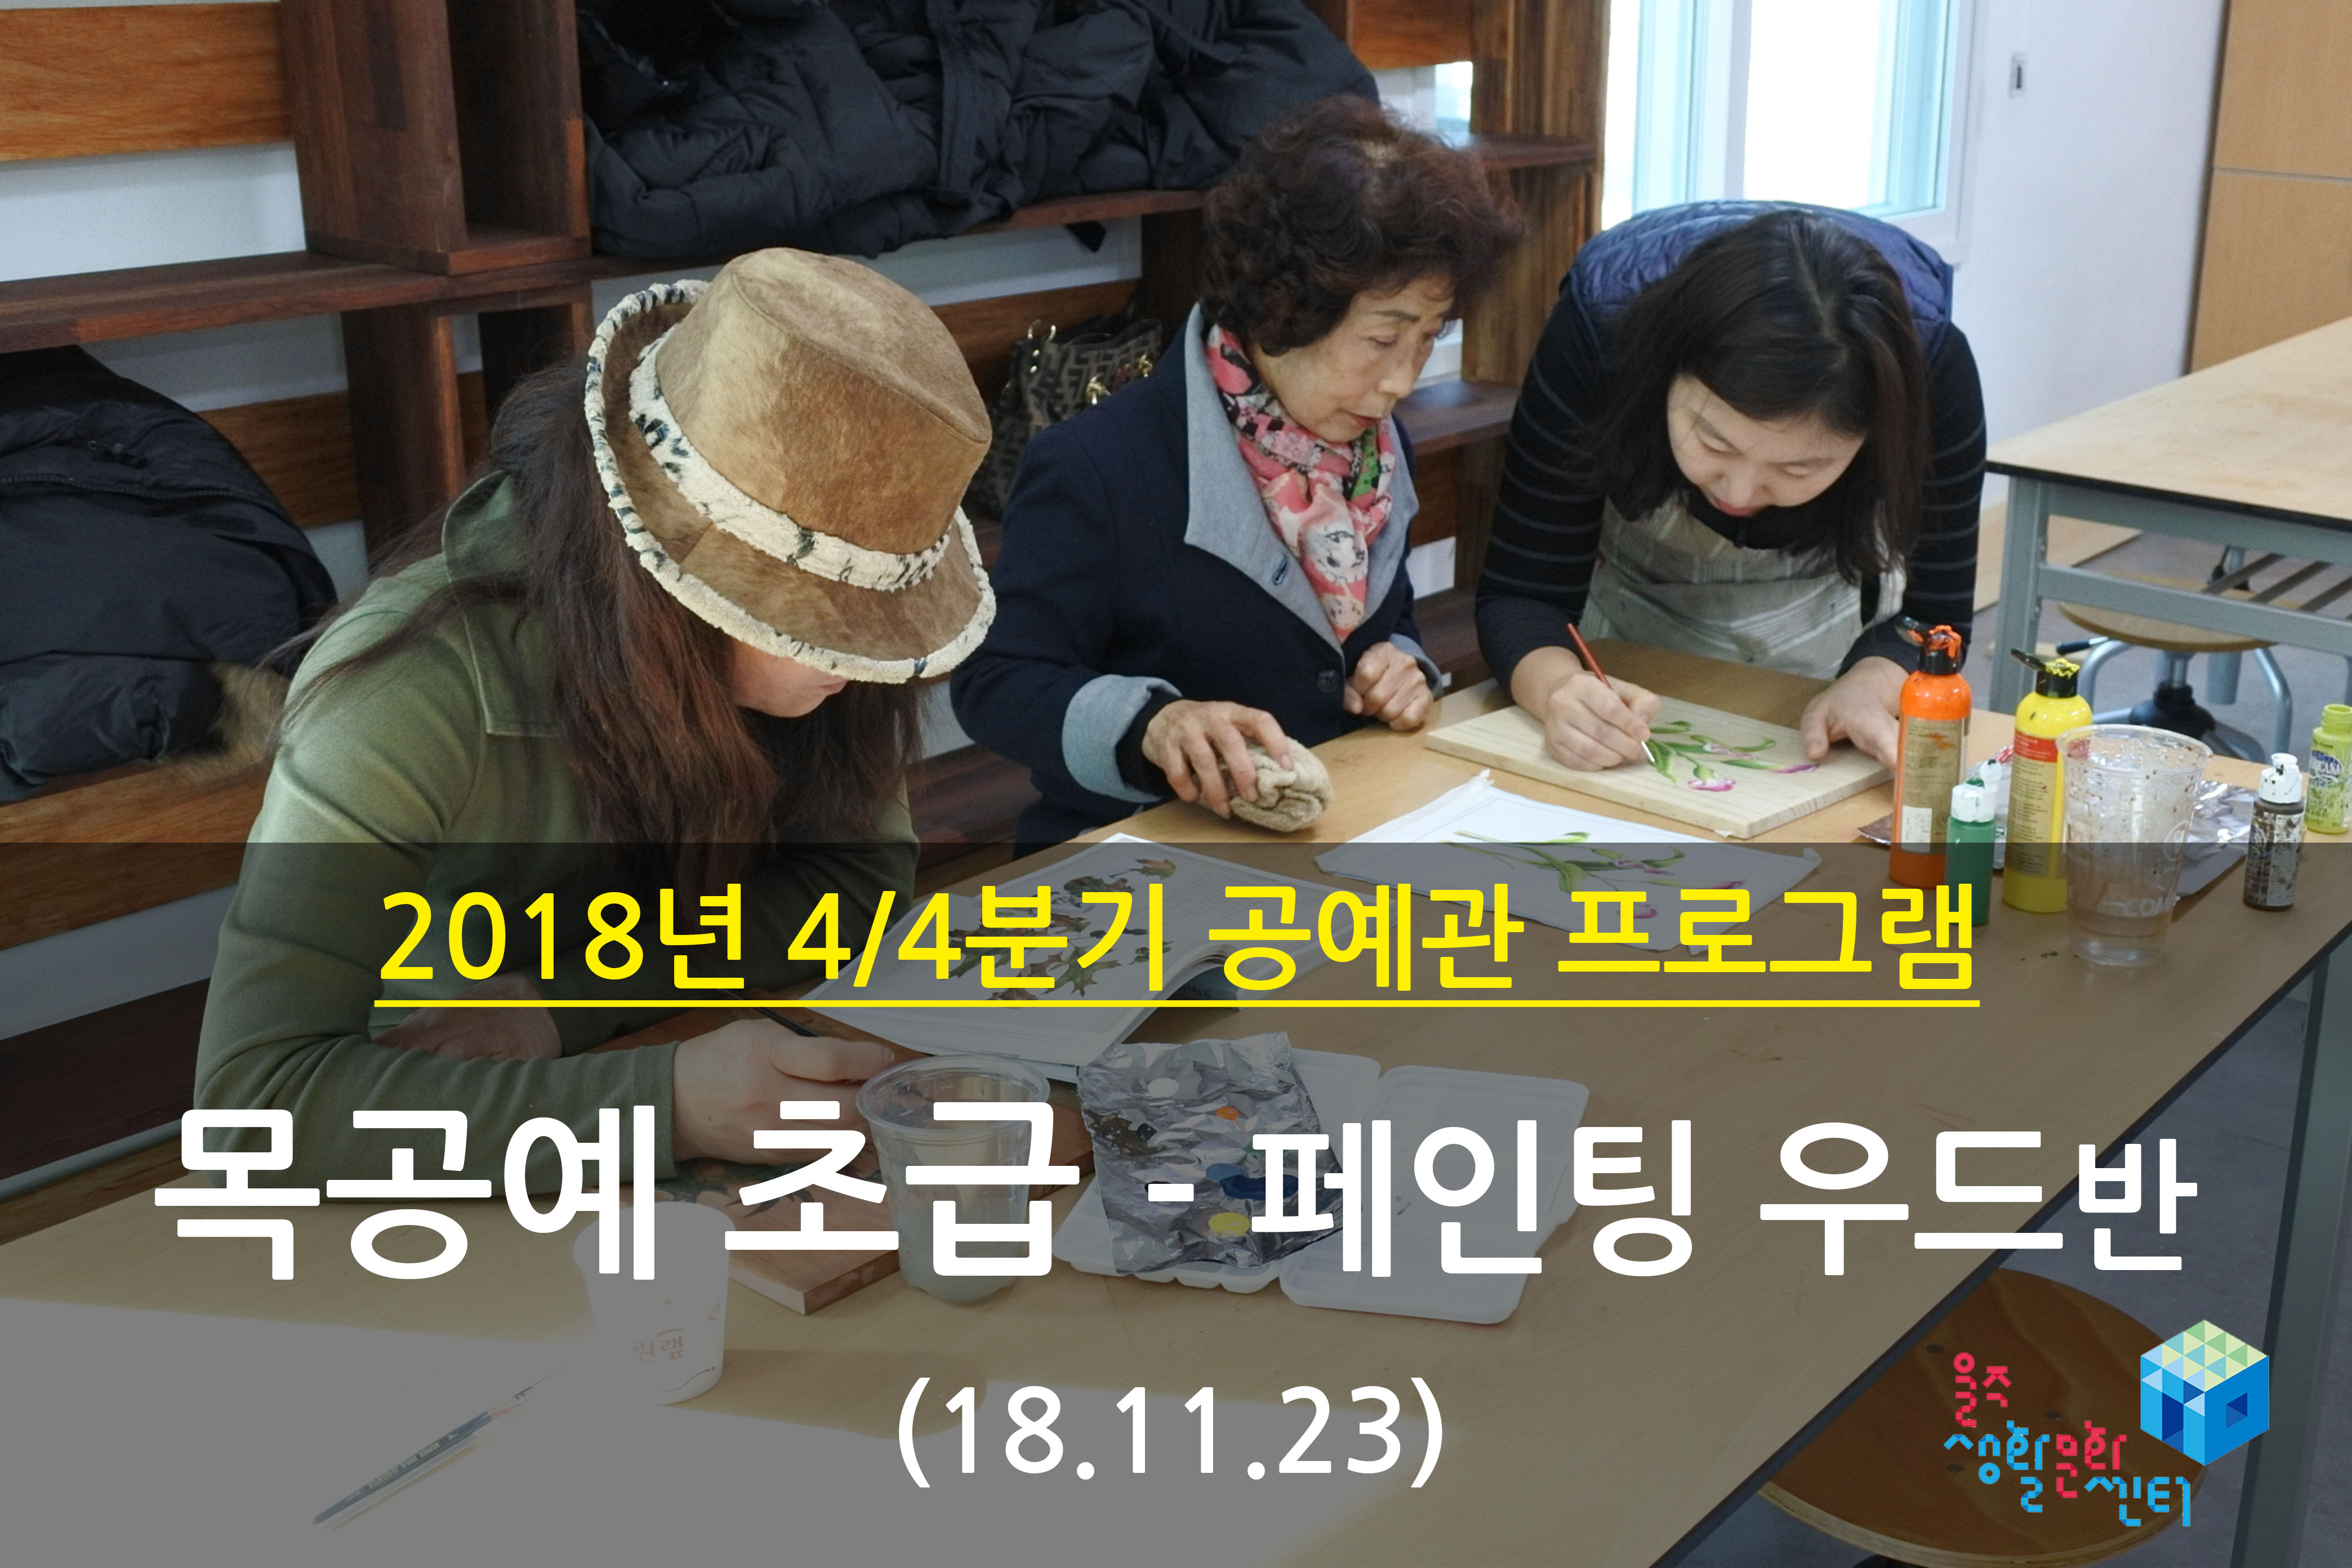 2018.11.23 _ 목공예 초급 - 페인팅우드반 _ 4/4분기 7주차 수업